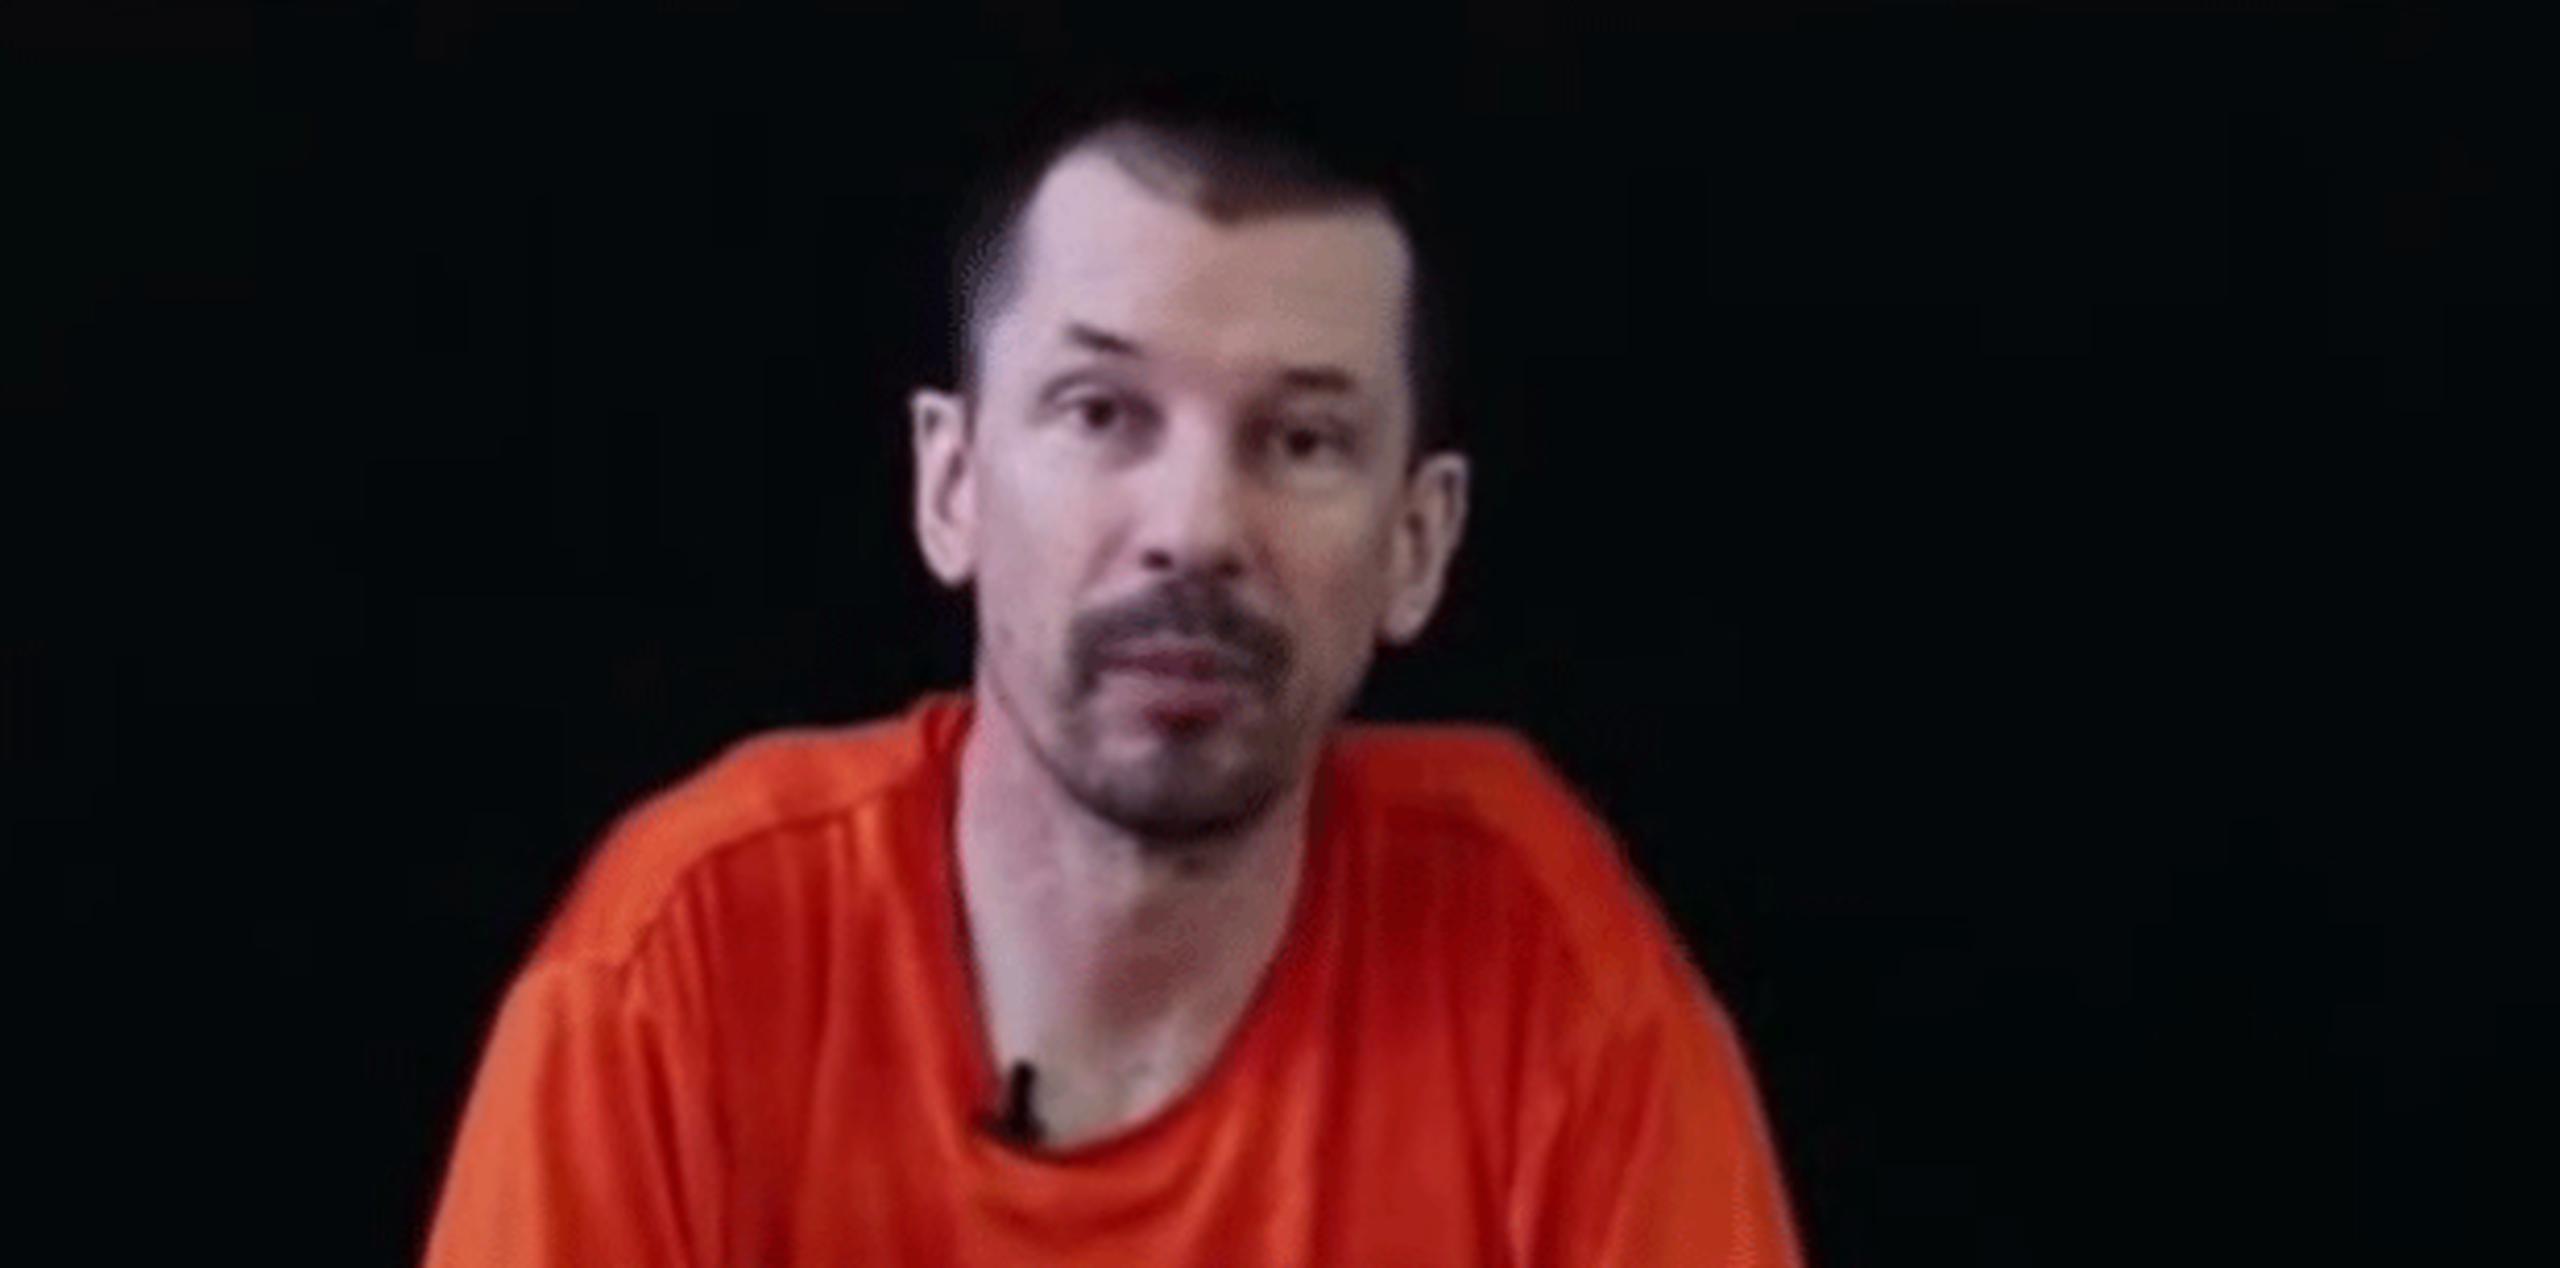 Se trata del tercer vídeo de este tipo en dos semanas en el que se ve a Cantlie, que fue secuestrado por el EI en noviembre de 2012. (Youtube)